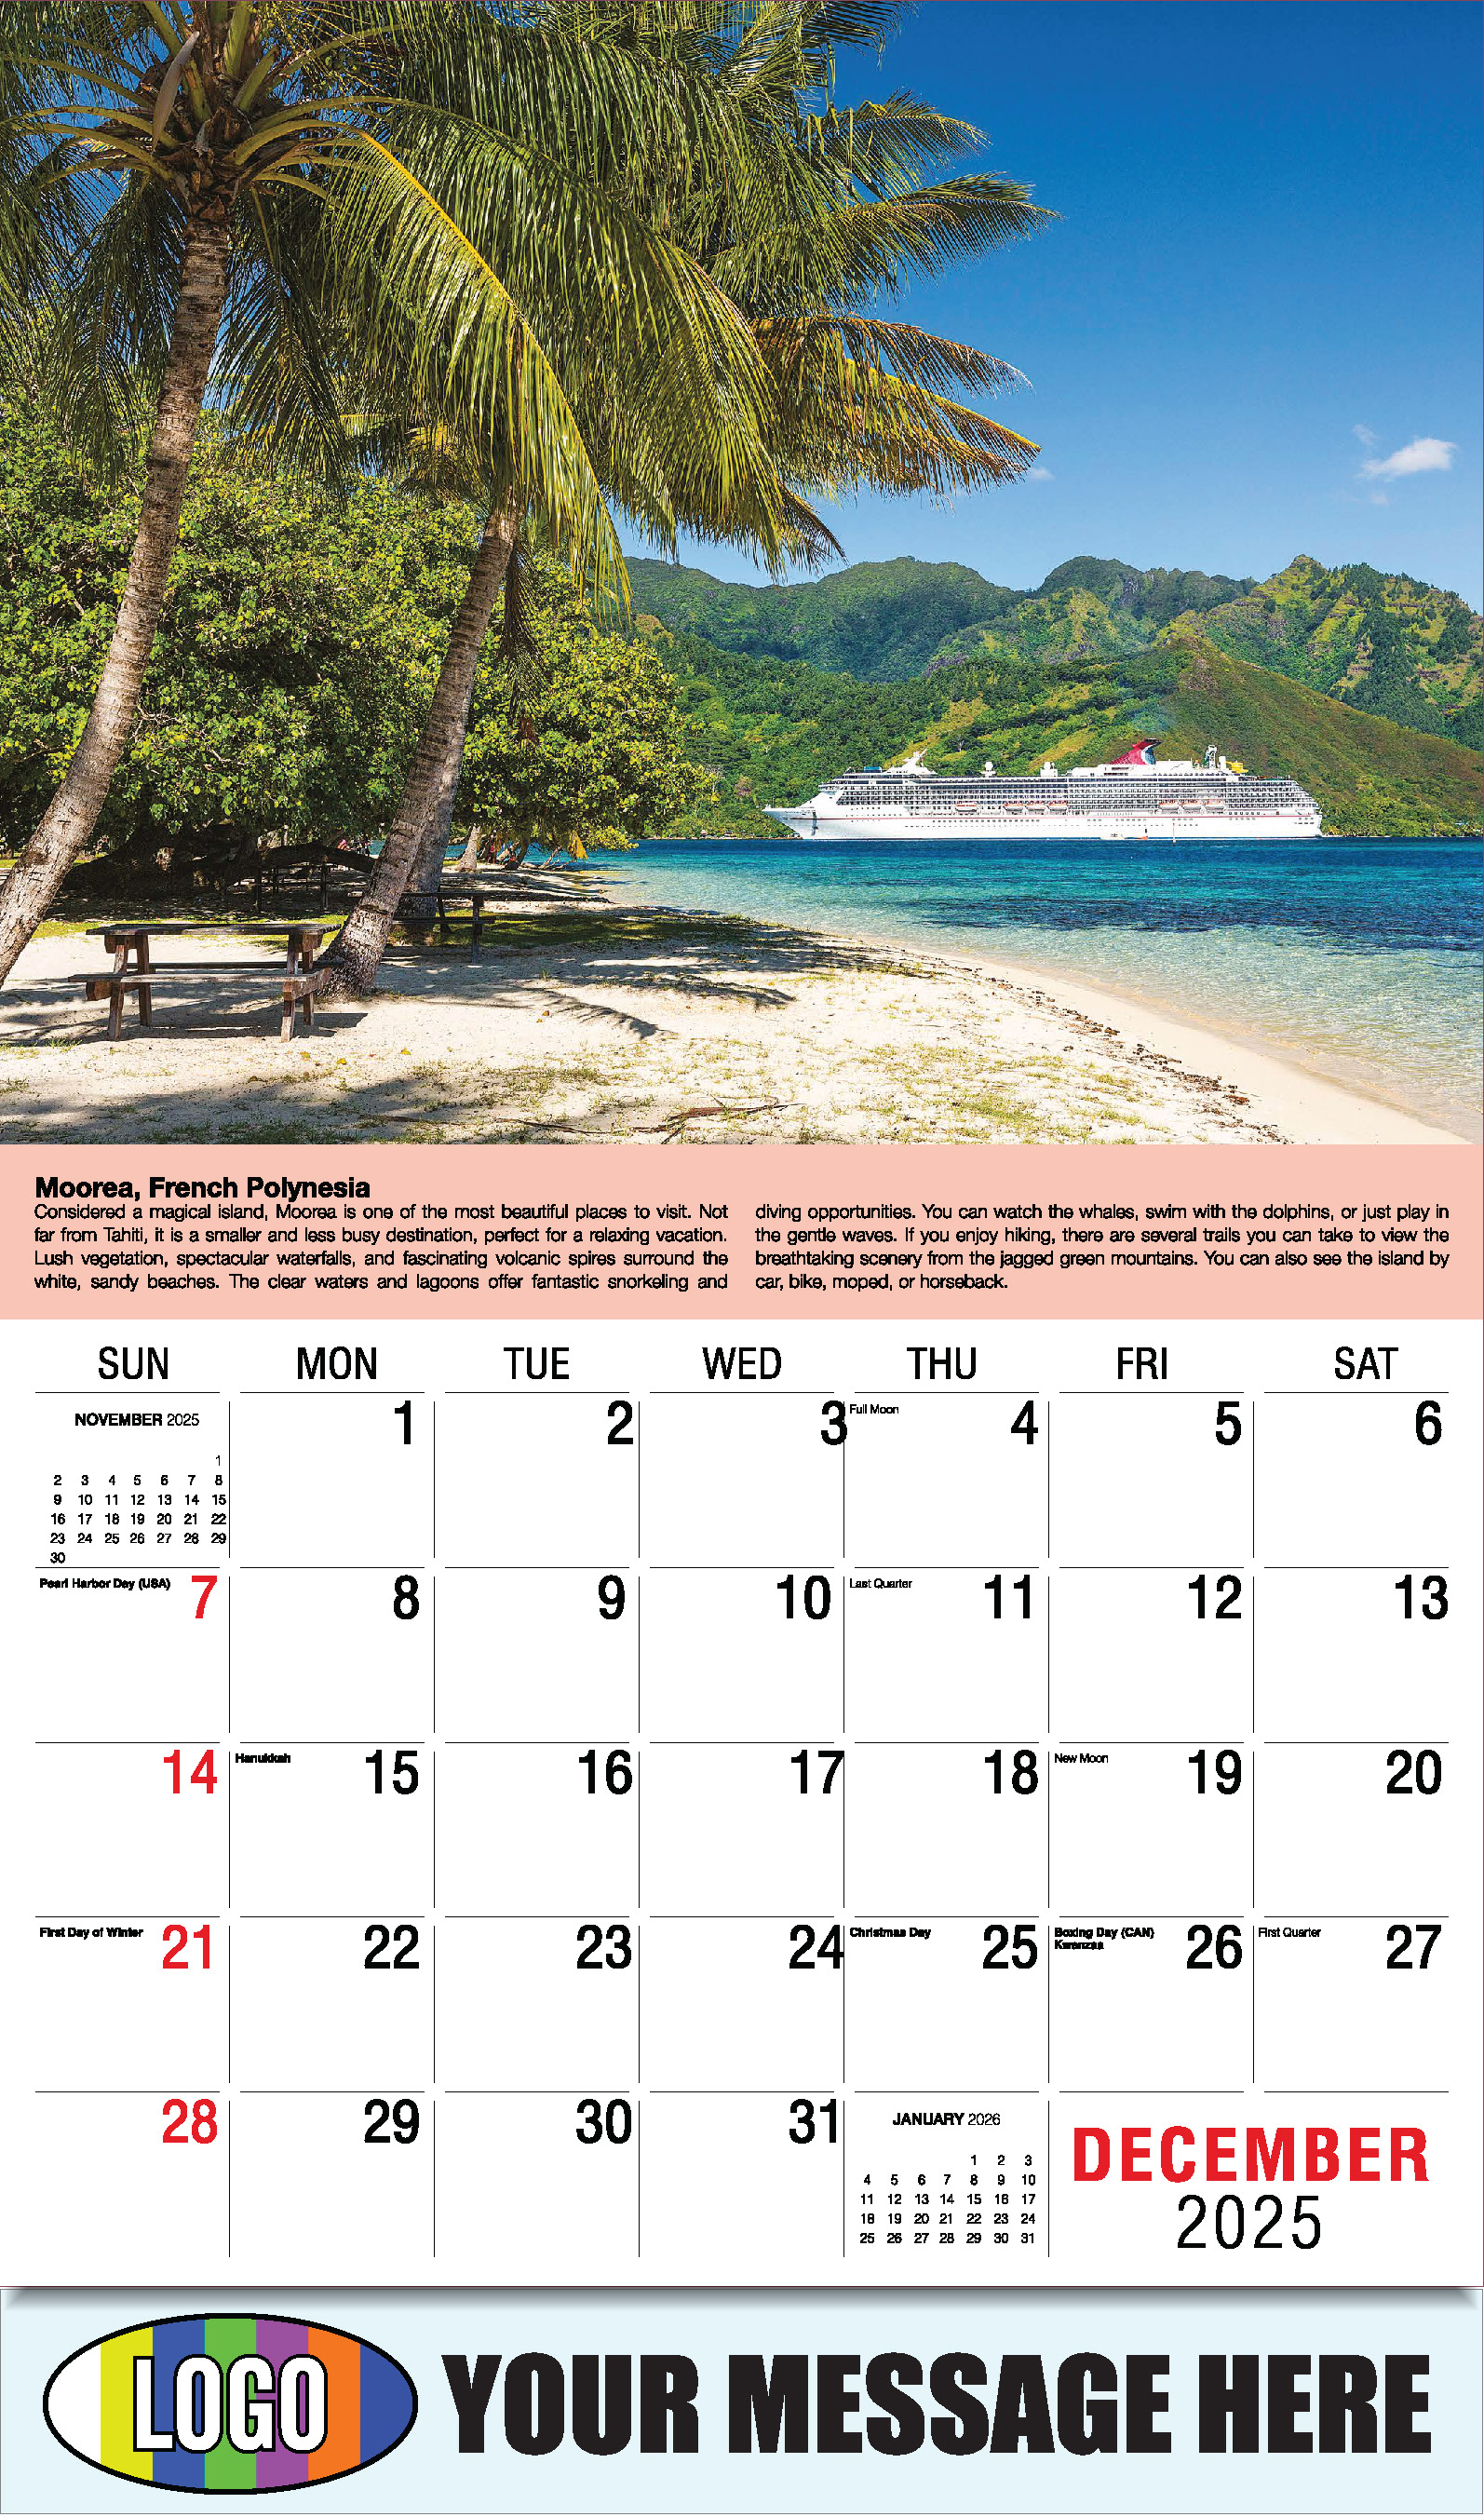 World Travel 2025 Business Advertising Wall Calendar - December